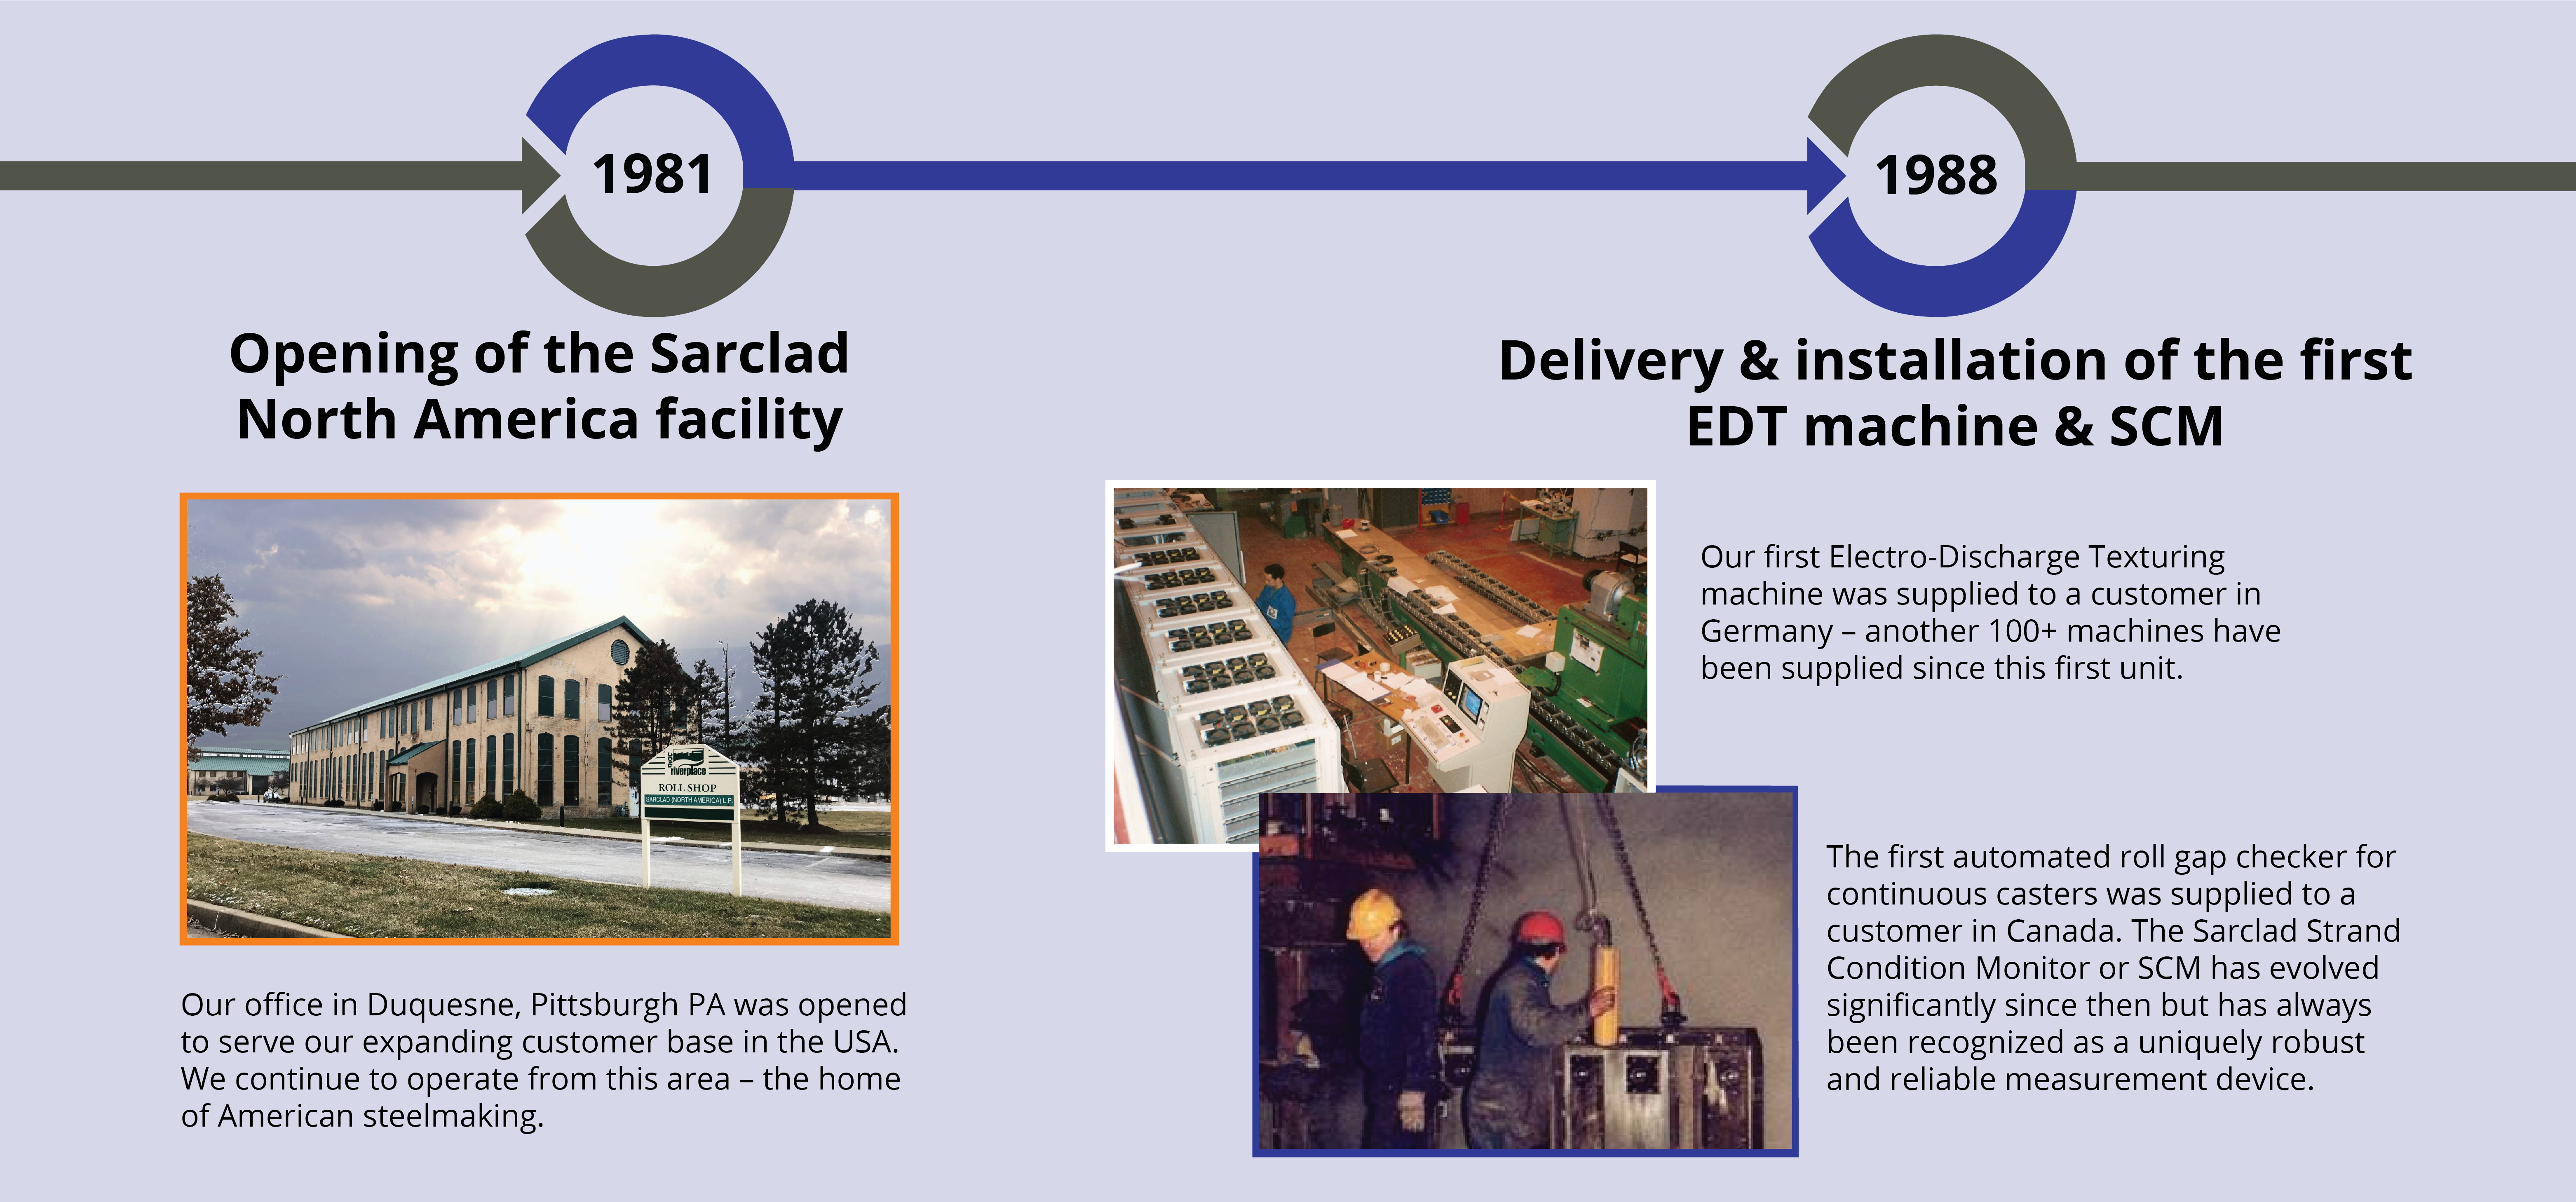 Sarclad installs first EDT machine & SCM in 1988